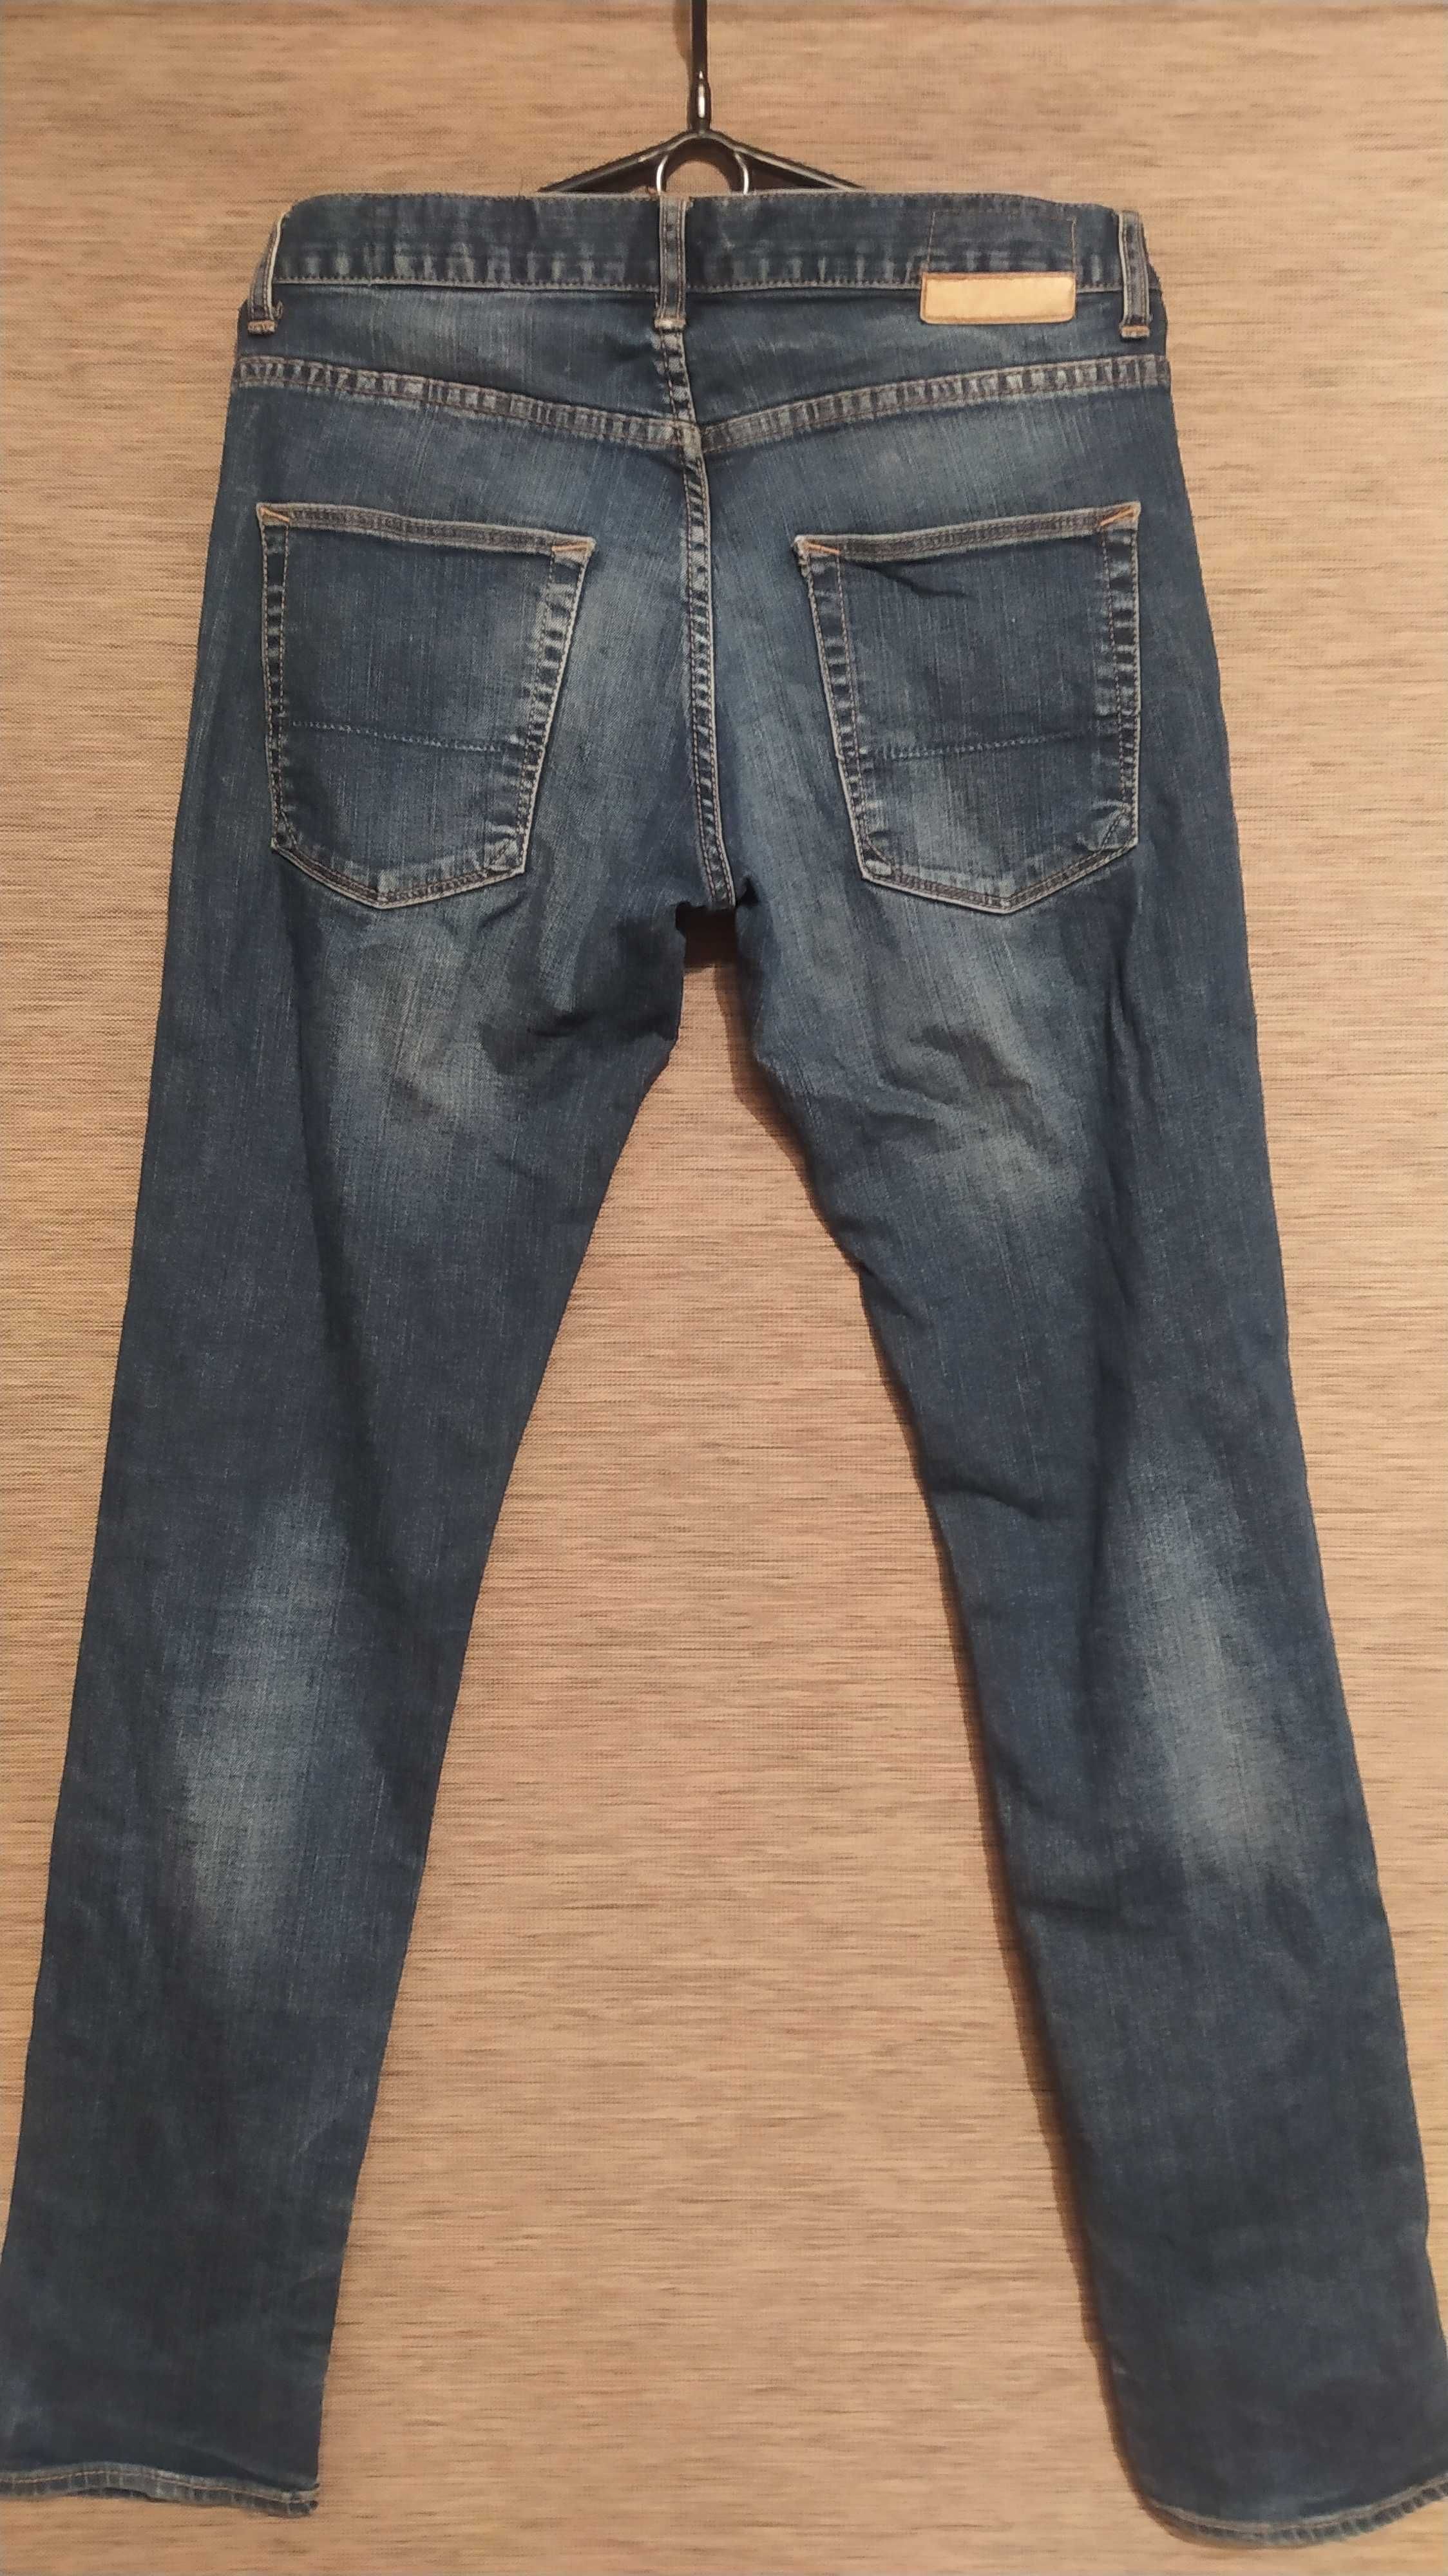 Spodnie męskie/młodzieżowe jeansowe Zara Men.